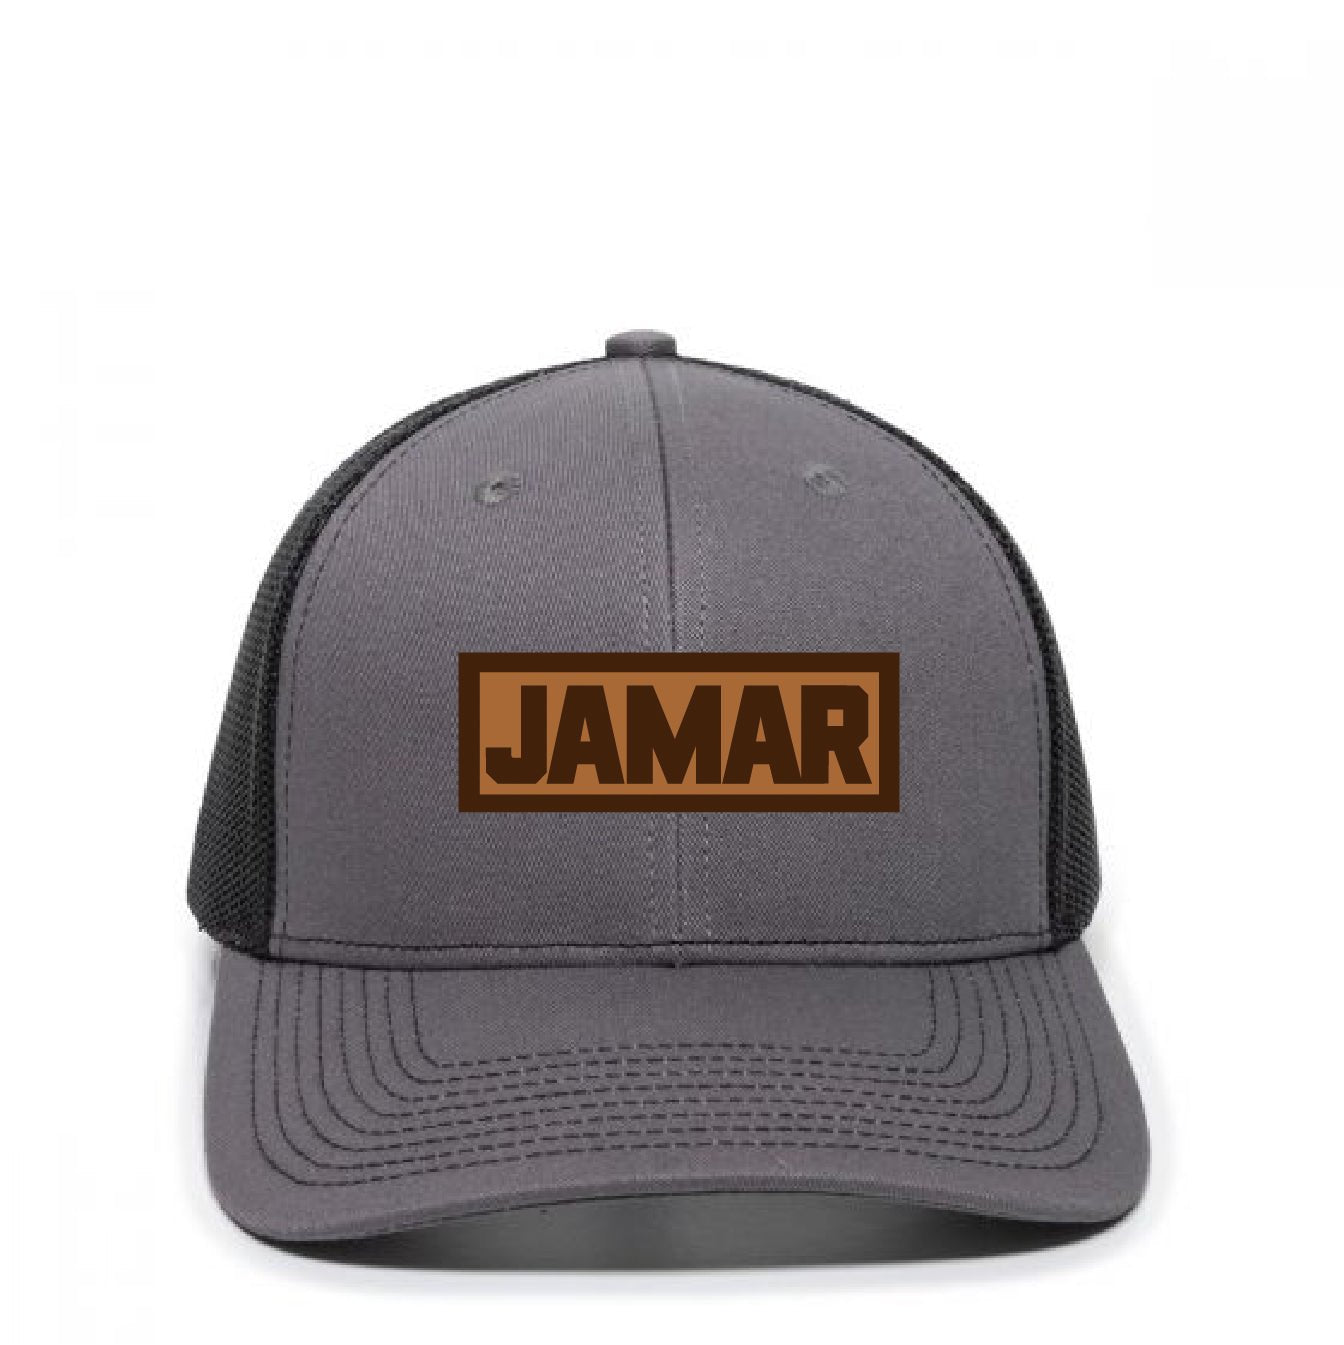 Jamar Service Trucker Hat - DSP On Demand